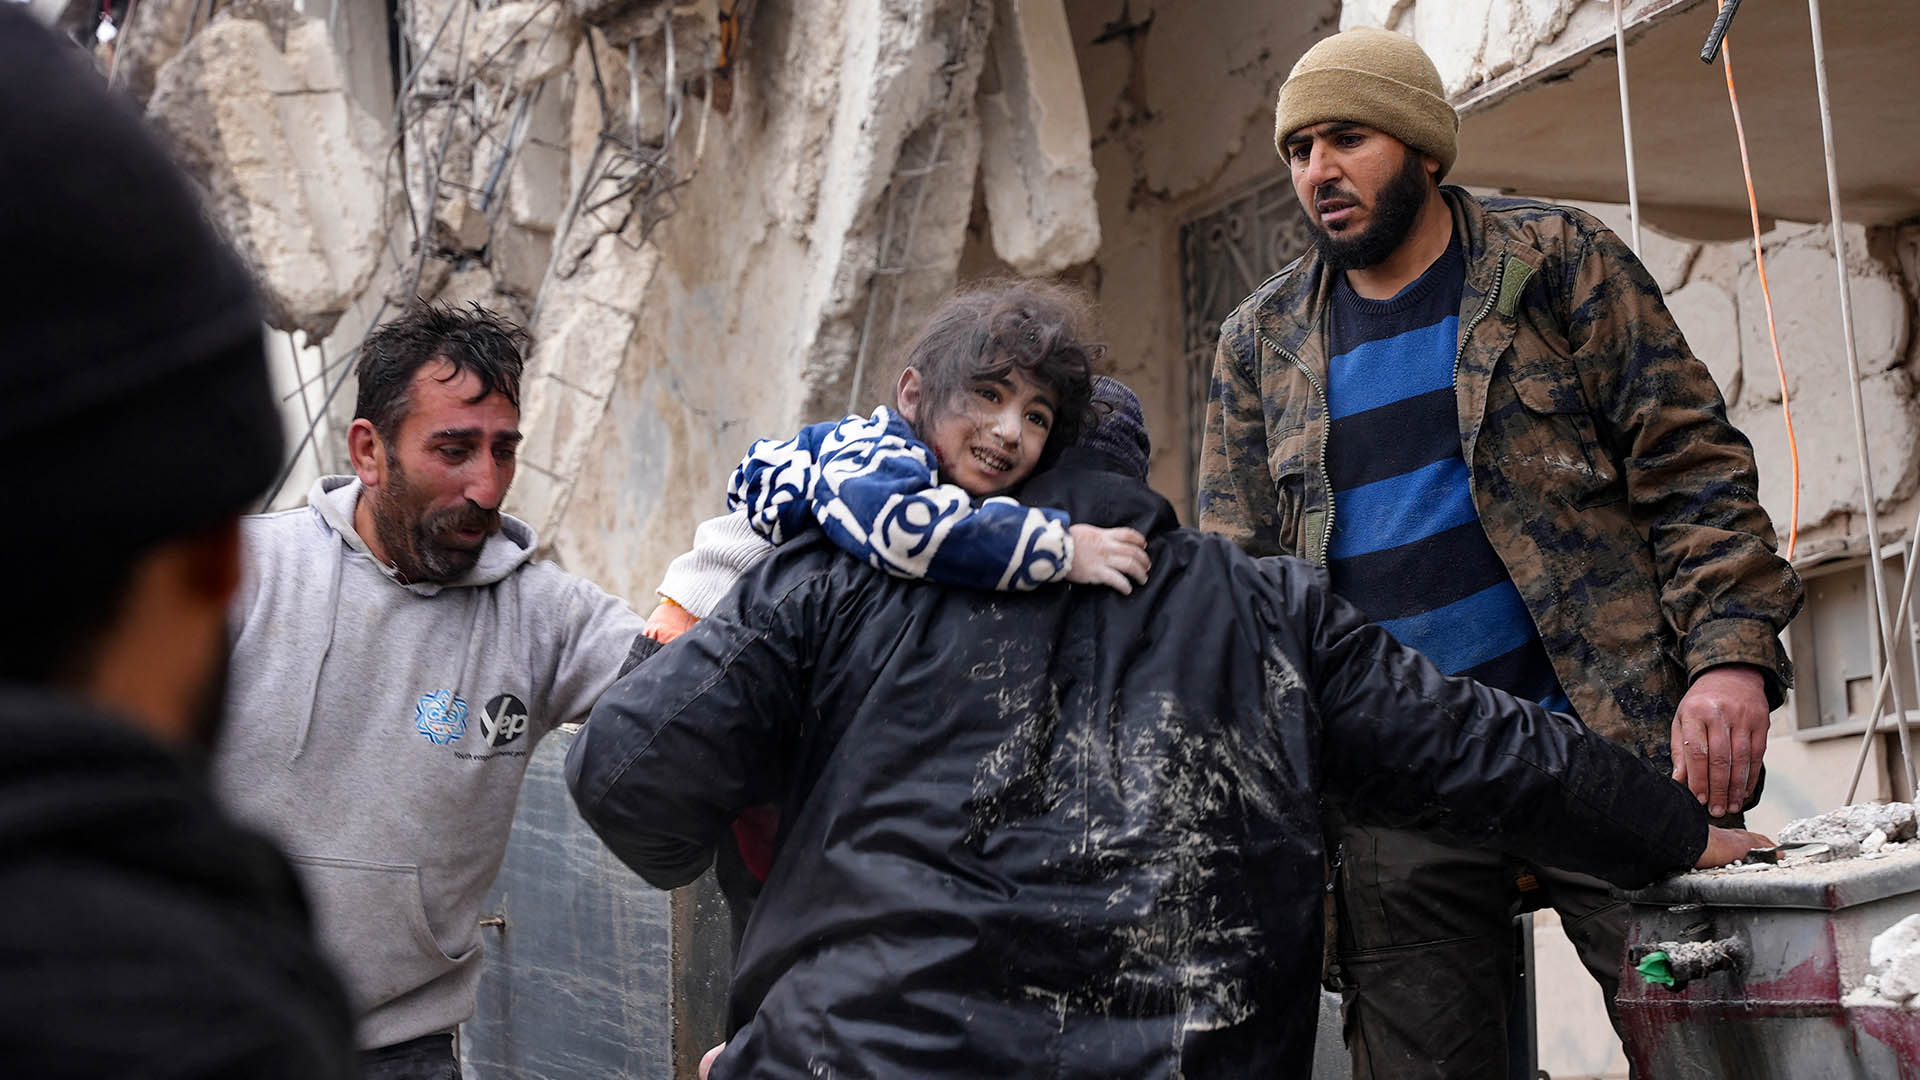 Los residentes recuperan a un niño pequeño de los escombros de un edificio derrumbado luego de un terremoto en la ciudad de Jandaris, en el campo de la ciudad de Afrin, en el noroeste de Siria, en la parte rebelde de la provincia de Alepo, el 6 de febrero de 2023 (Photo by Rami al SAYED / AFP)